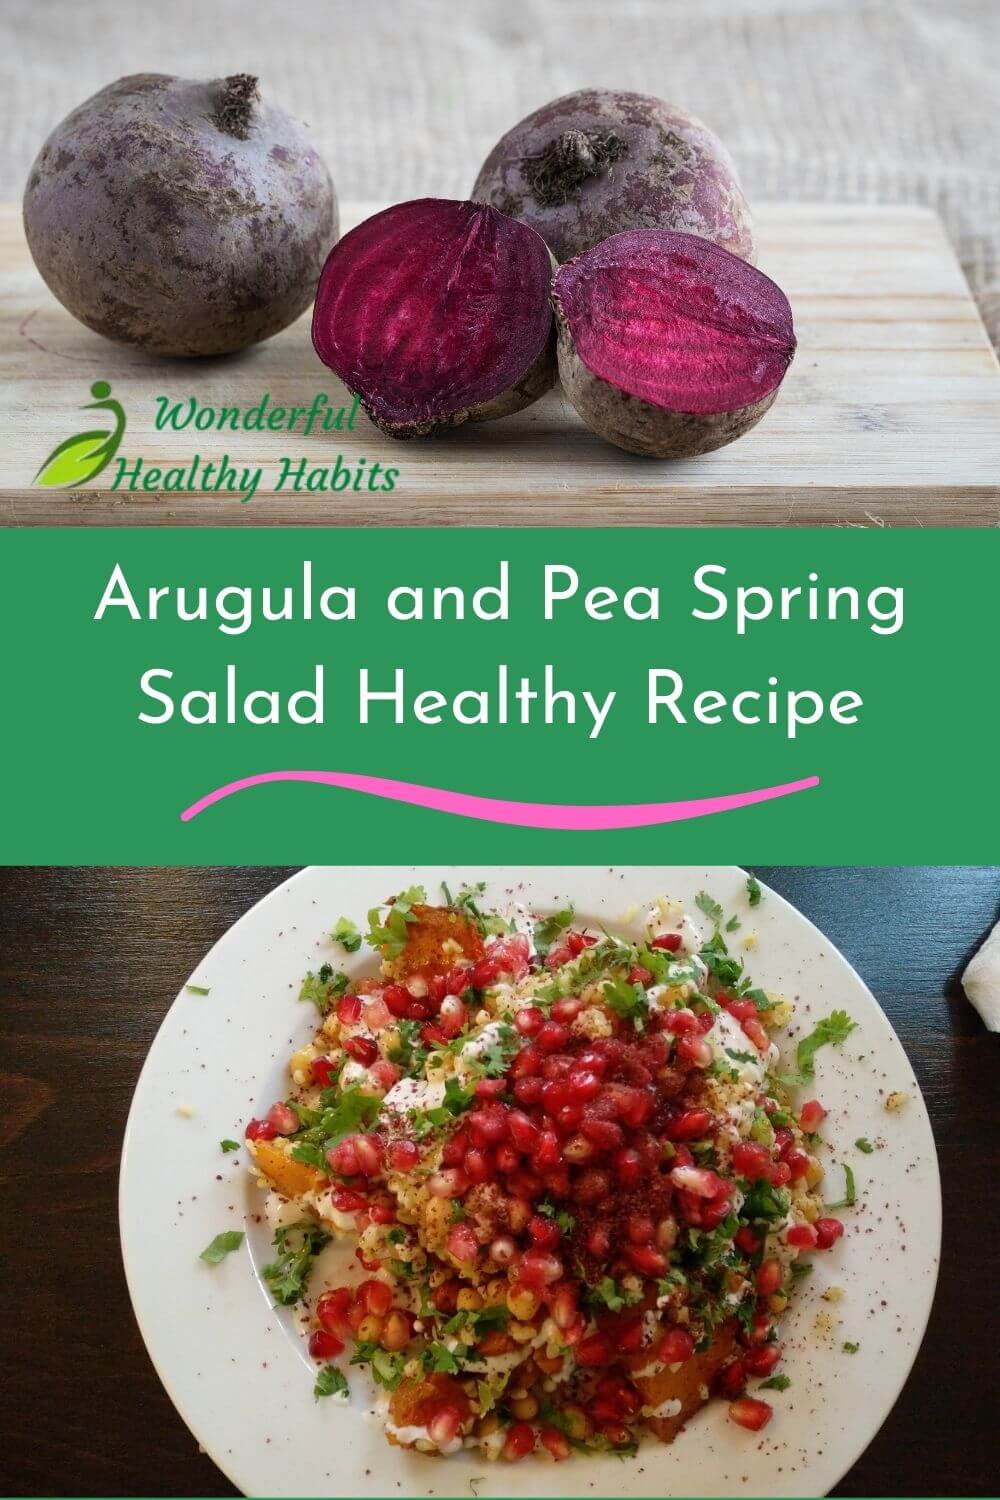 Arugula and Pea Spring Salad Healthy Recipe